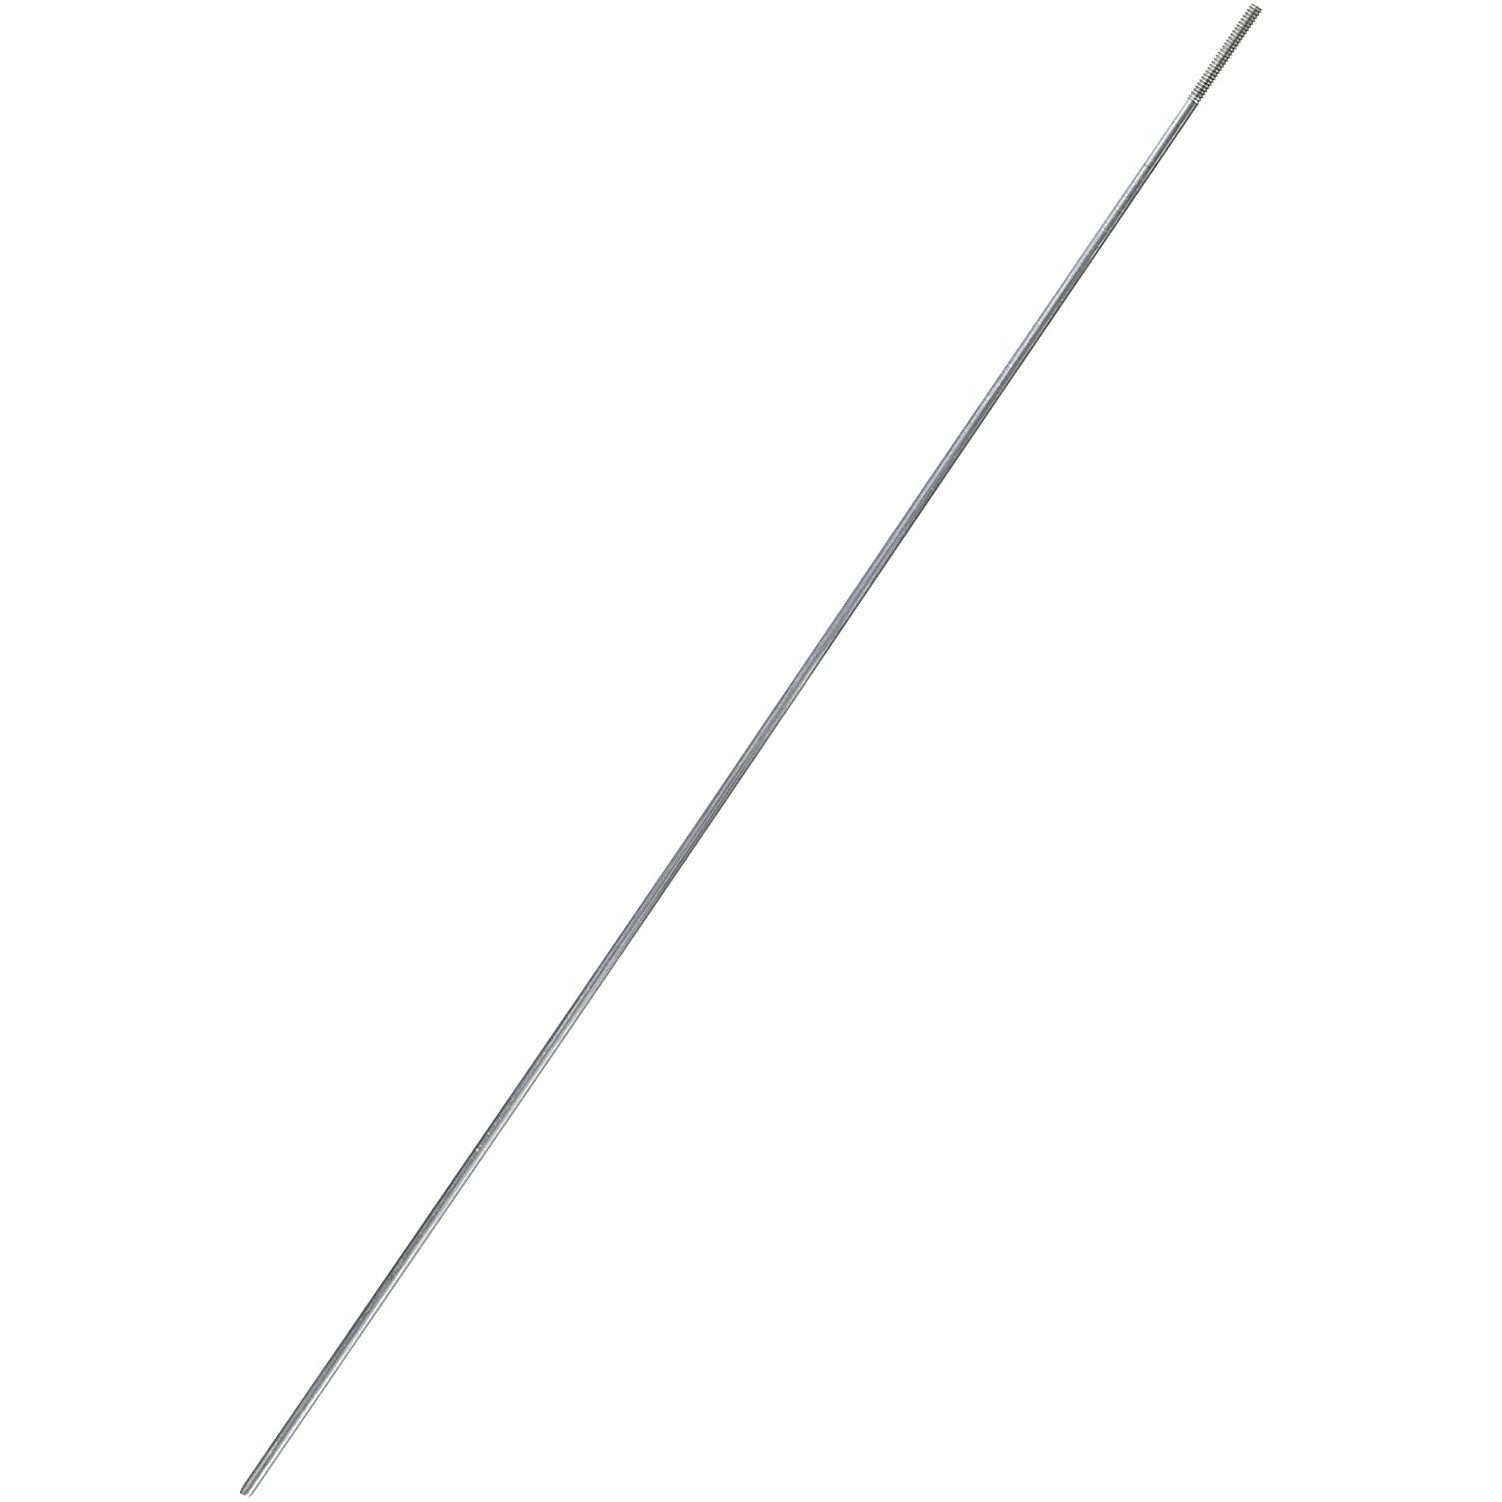 DUBRO 144 12", 4-40 Threaded Rod